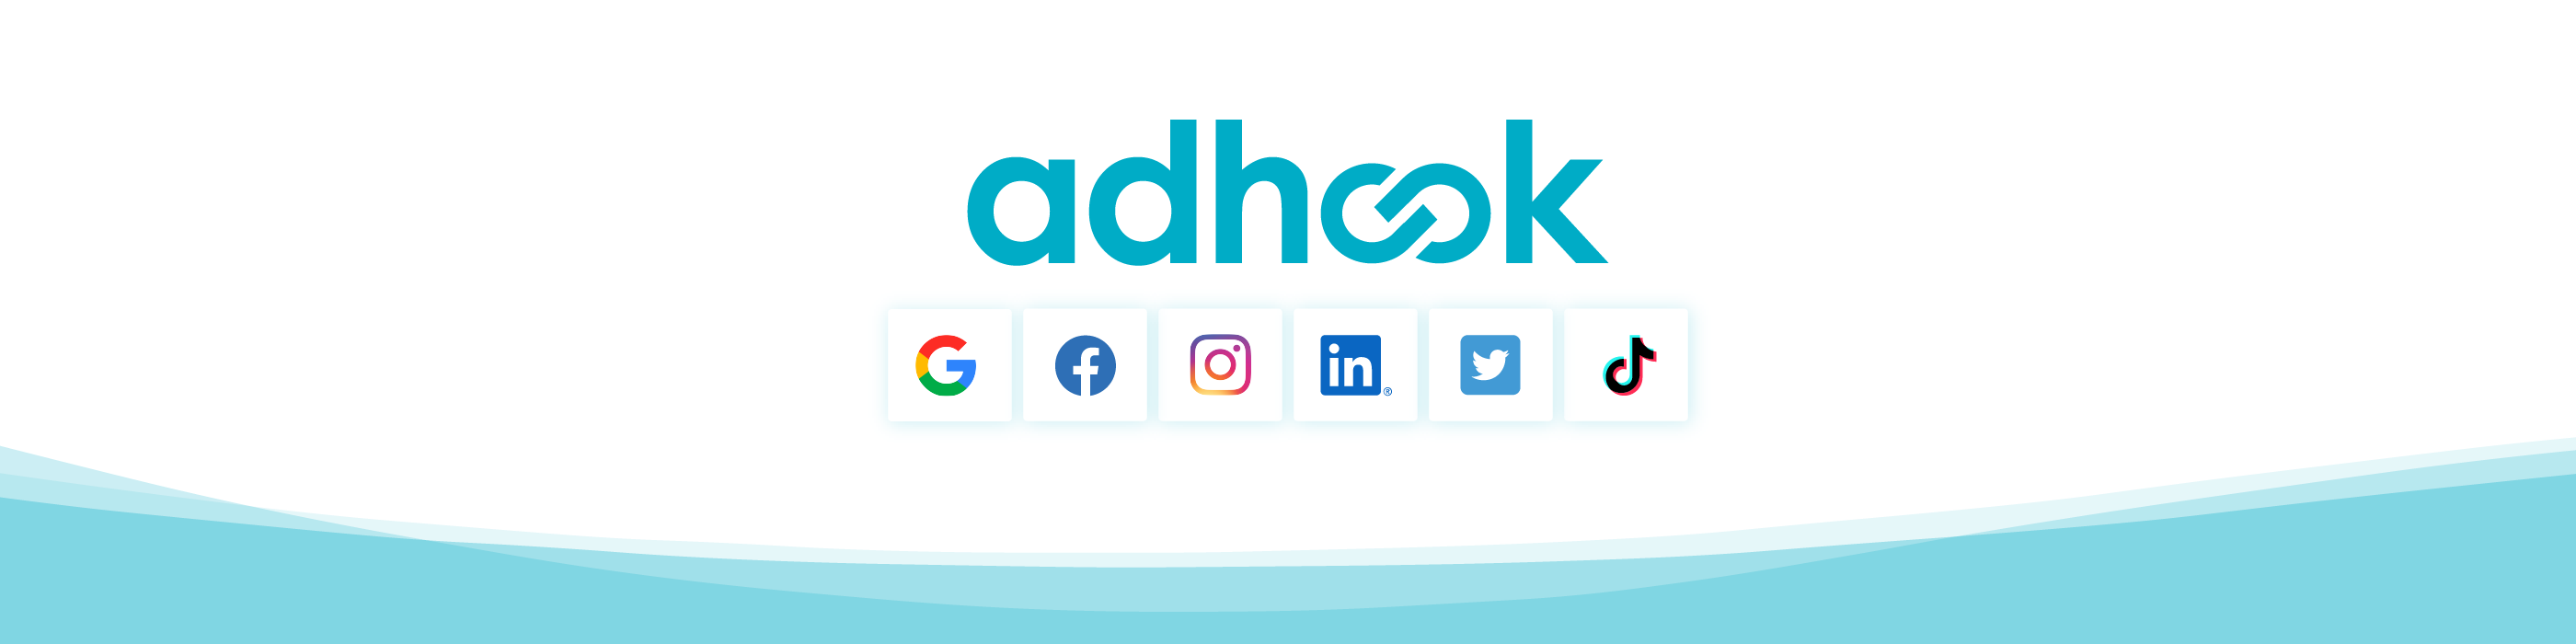 Review adhook: Google & Social Media Brand Management Software - Appvizer